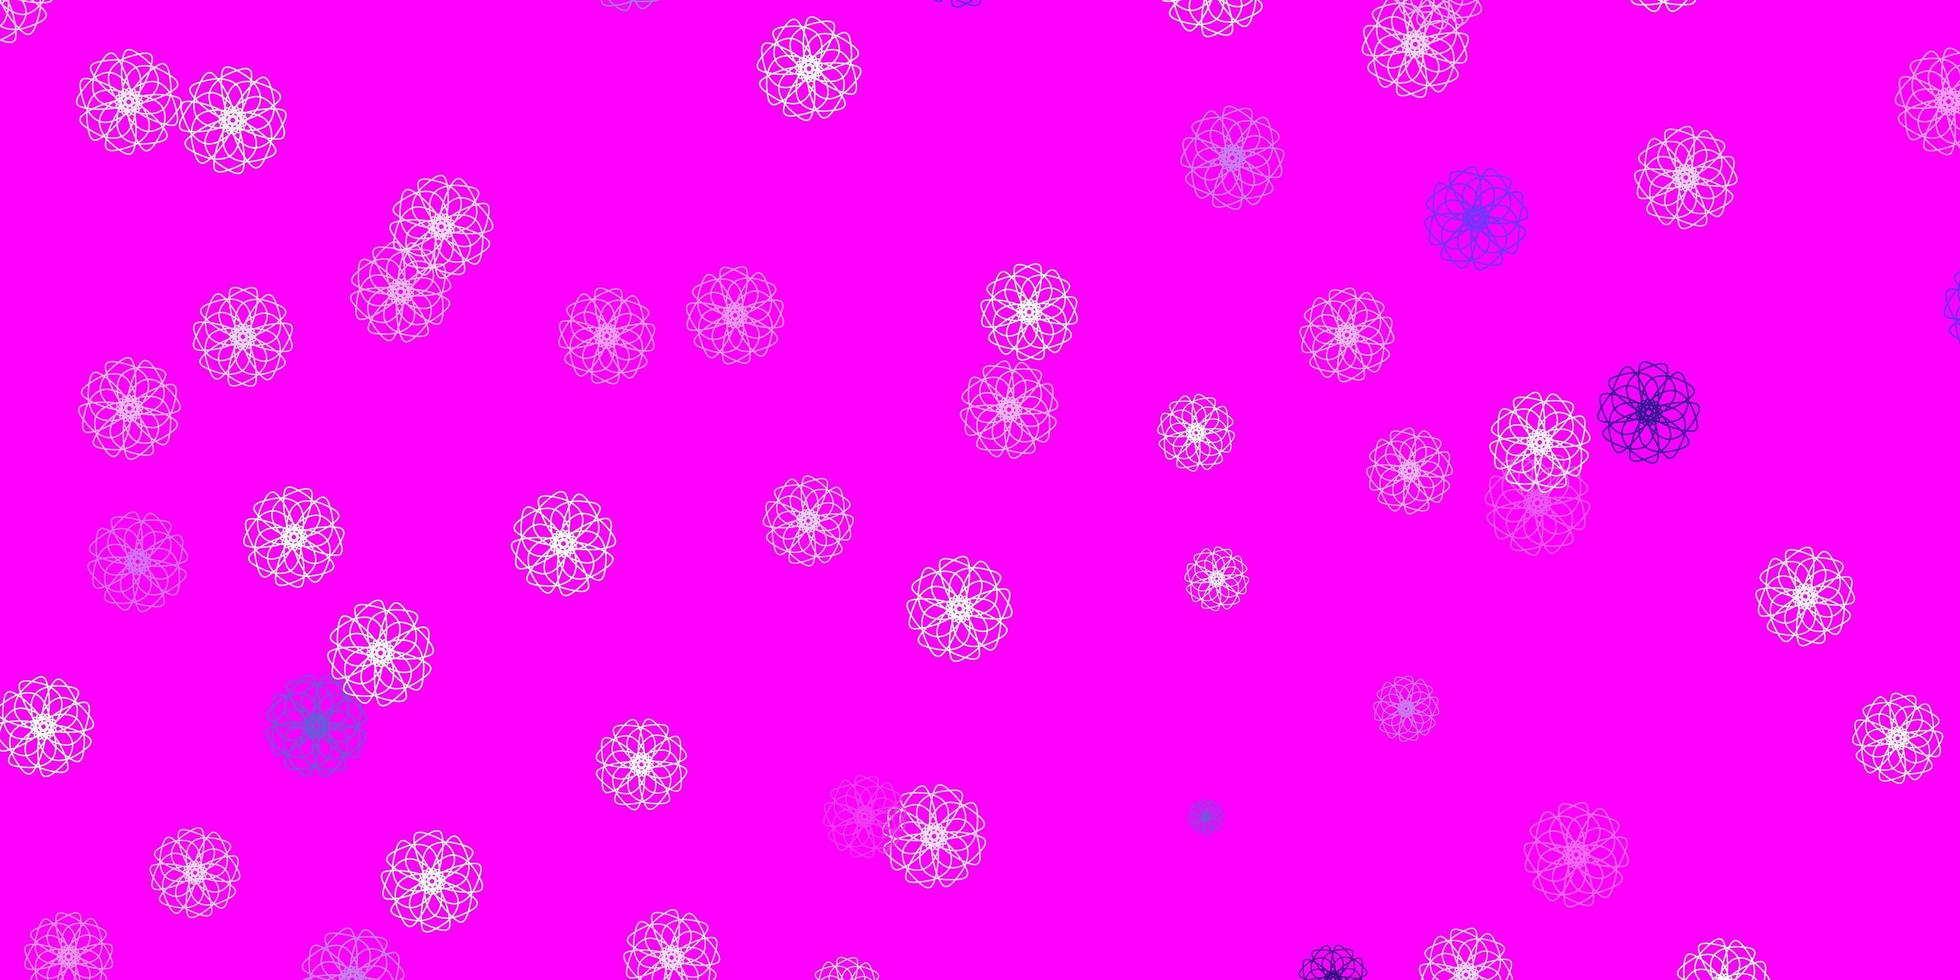 struttura di doodle di vettore viola chiaro, rosa con fiori.